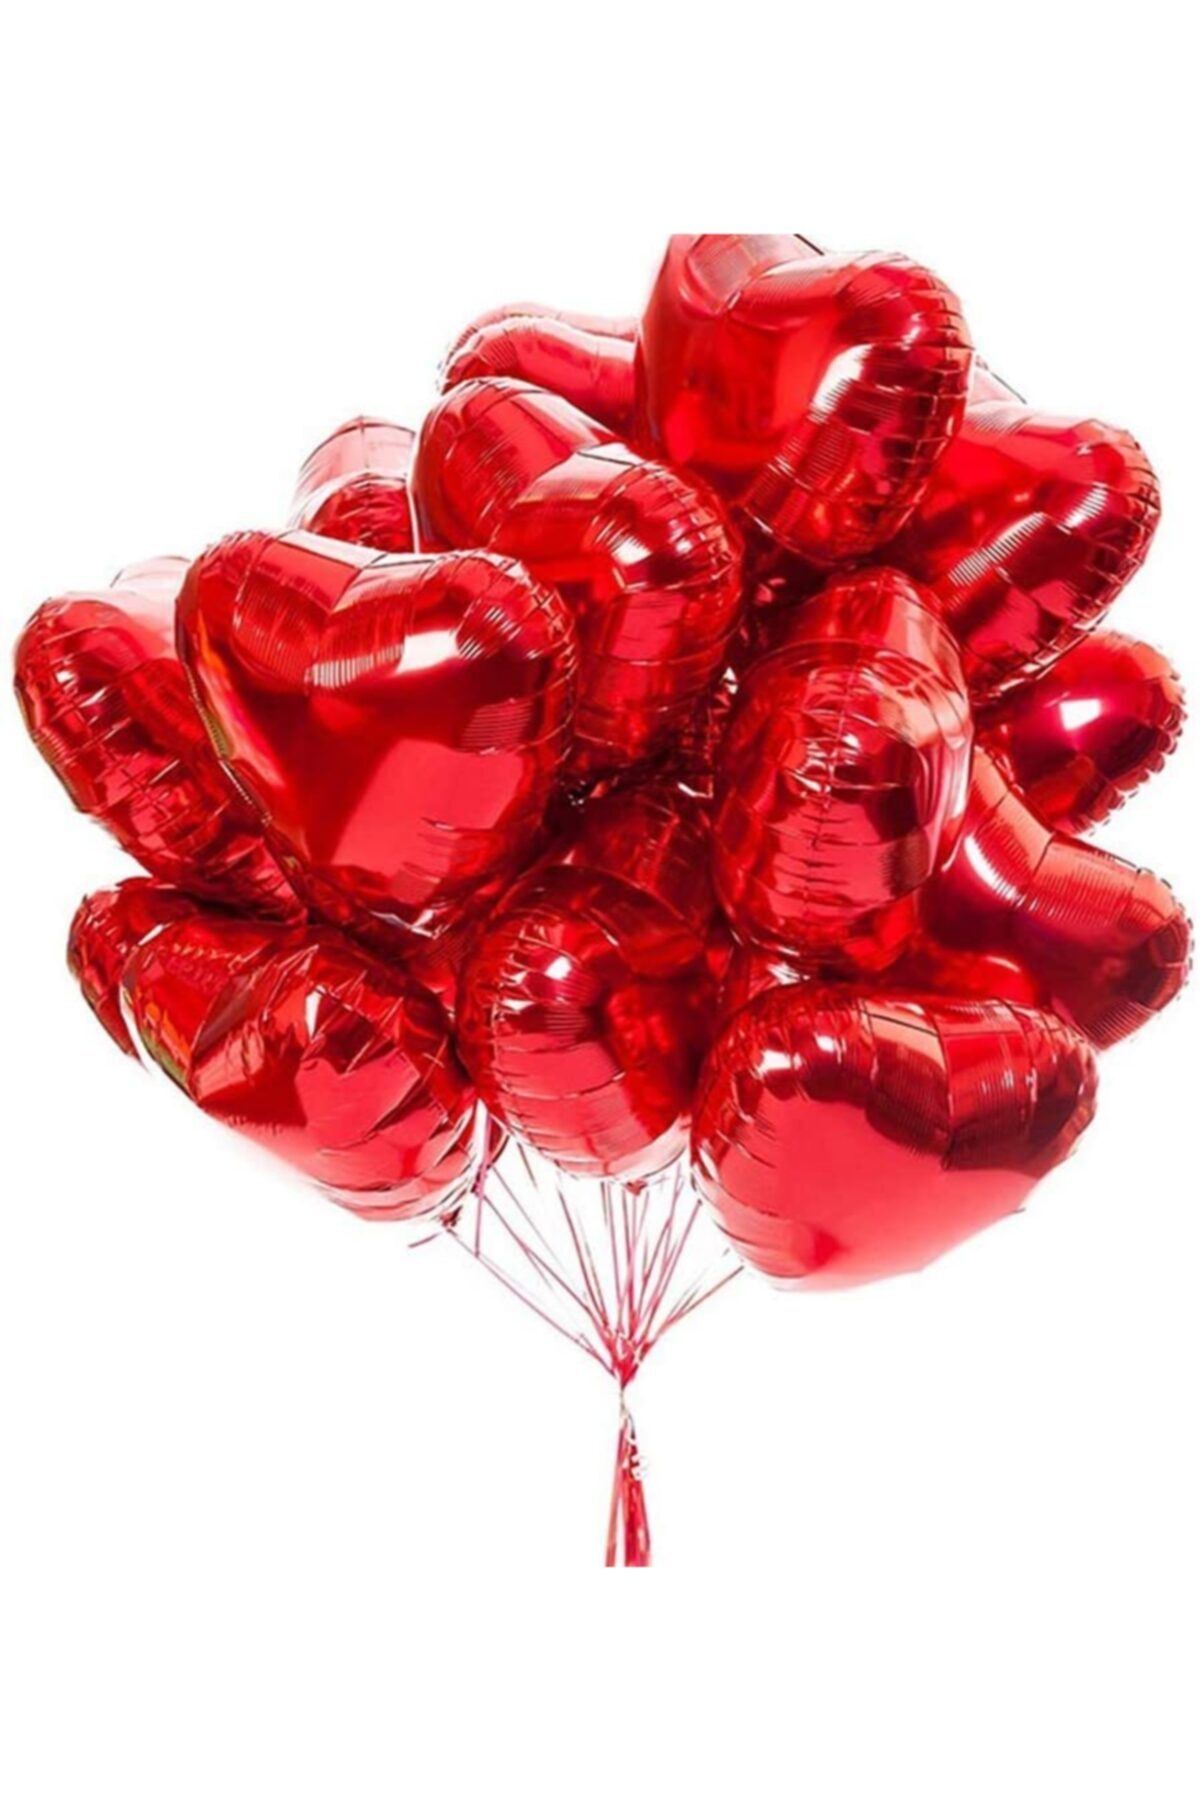 BİDOLUMUTLULUK Kalp Folyo Balon 40 Cm 20 Adet Kalp Folyo Balon Seti Kalpli Balon Folyo 40 Cm